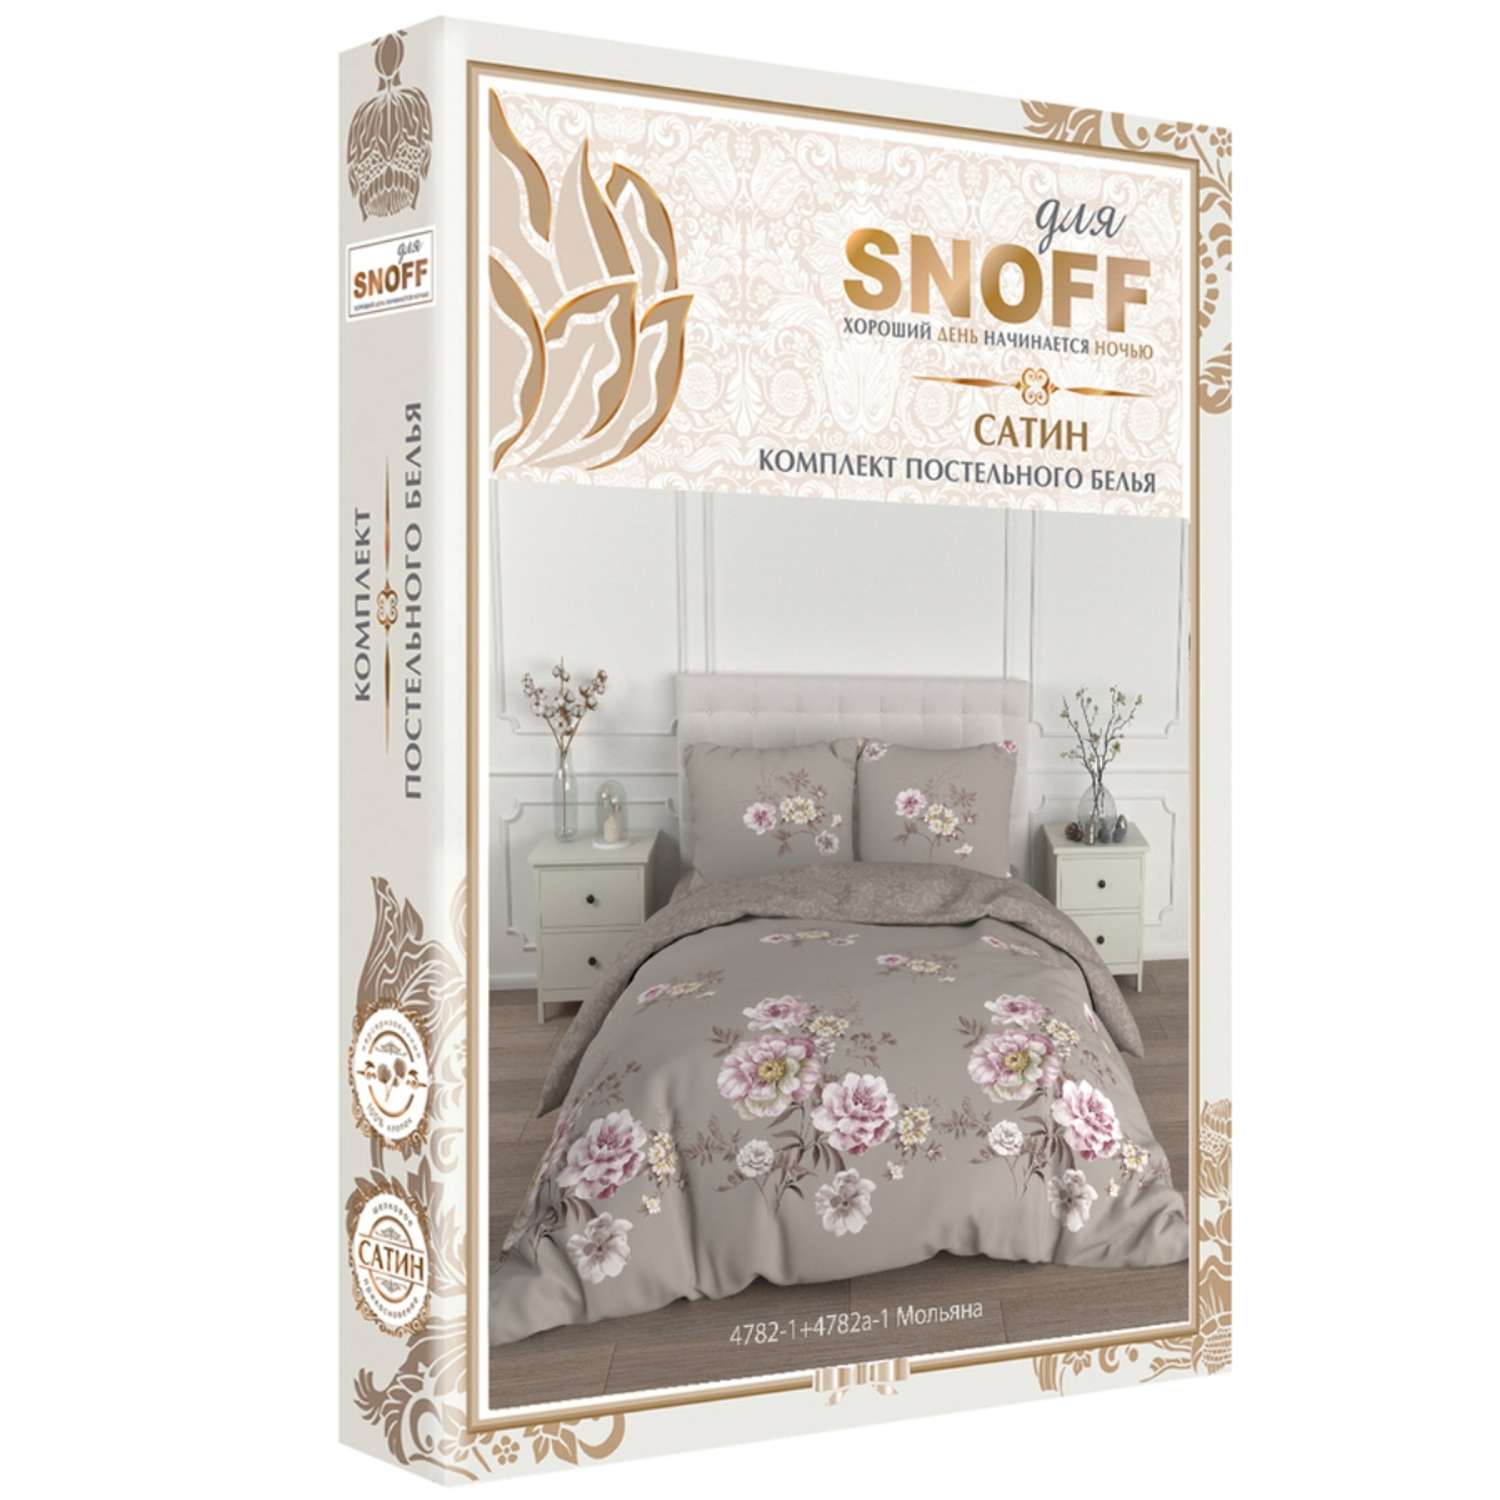 Комплект постельного белья для SNOFF Мольяна 1.5спальный сатин - фото 7